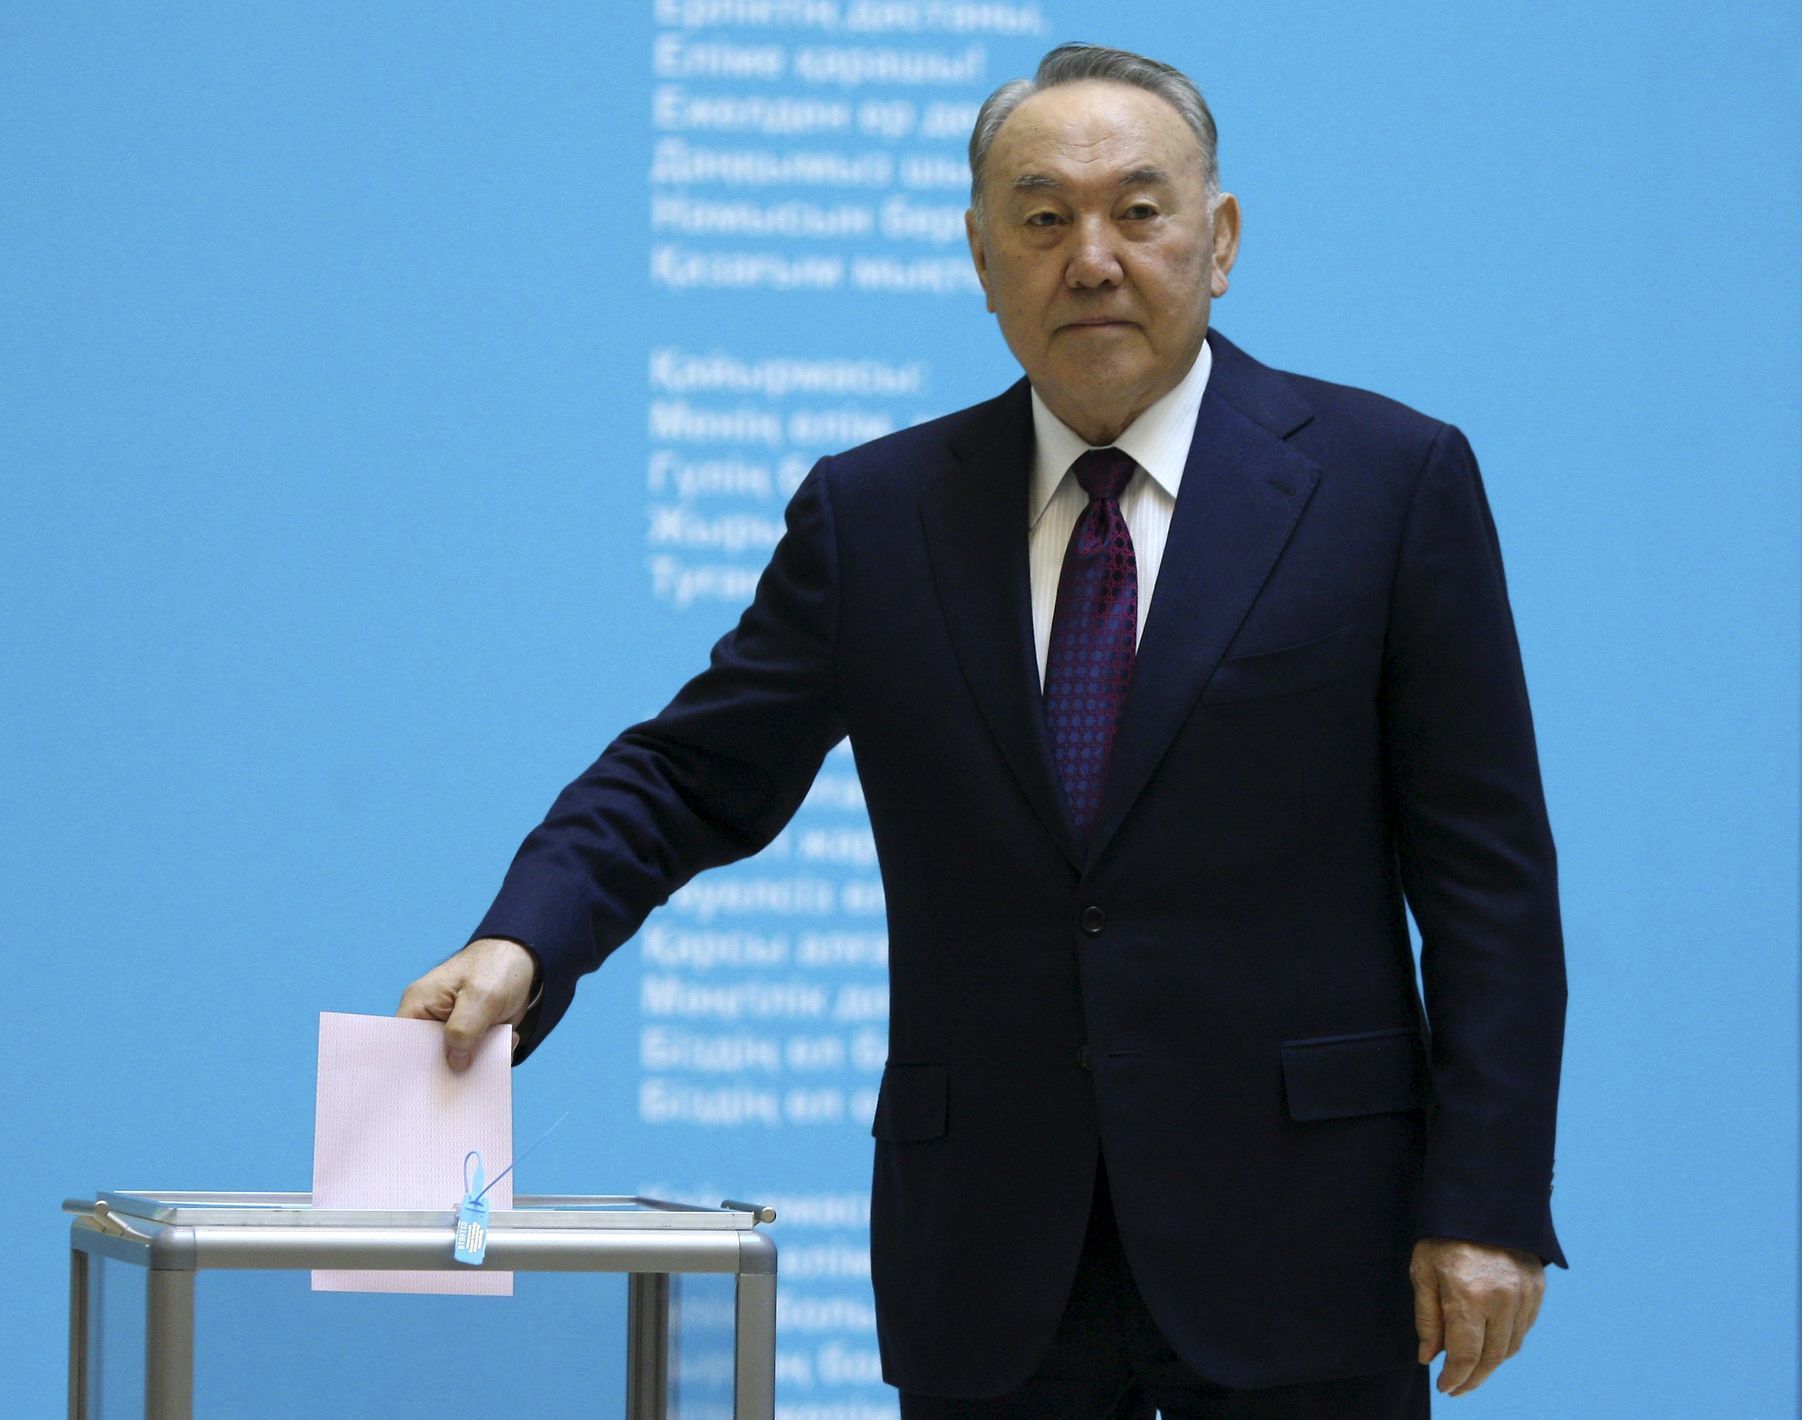 Nazarbajev - volby